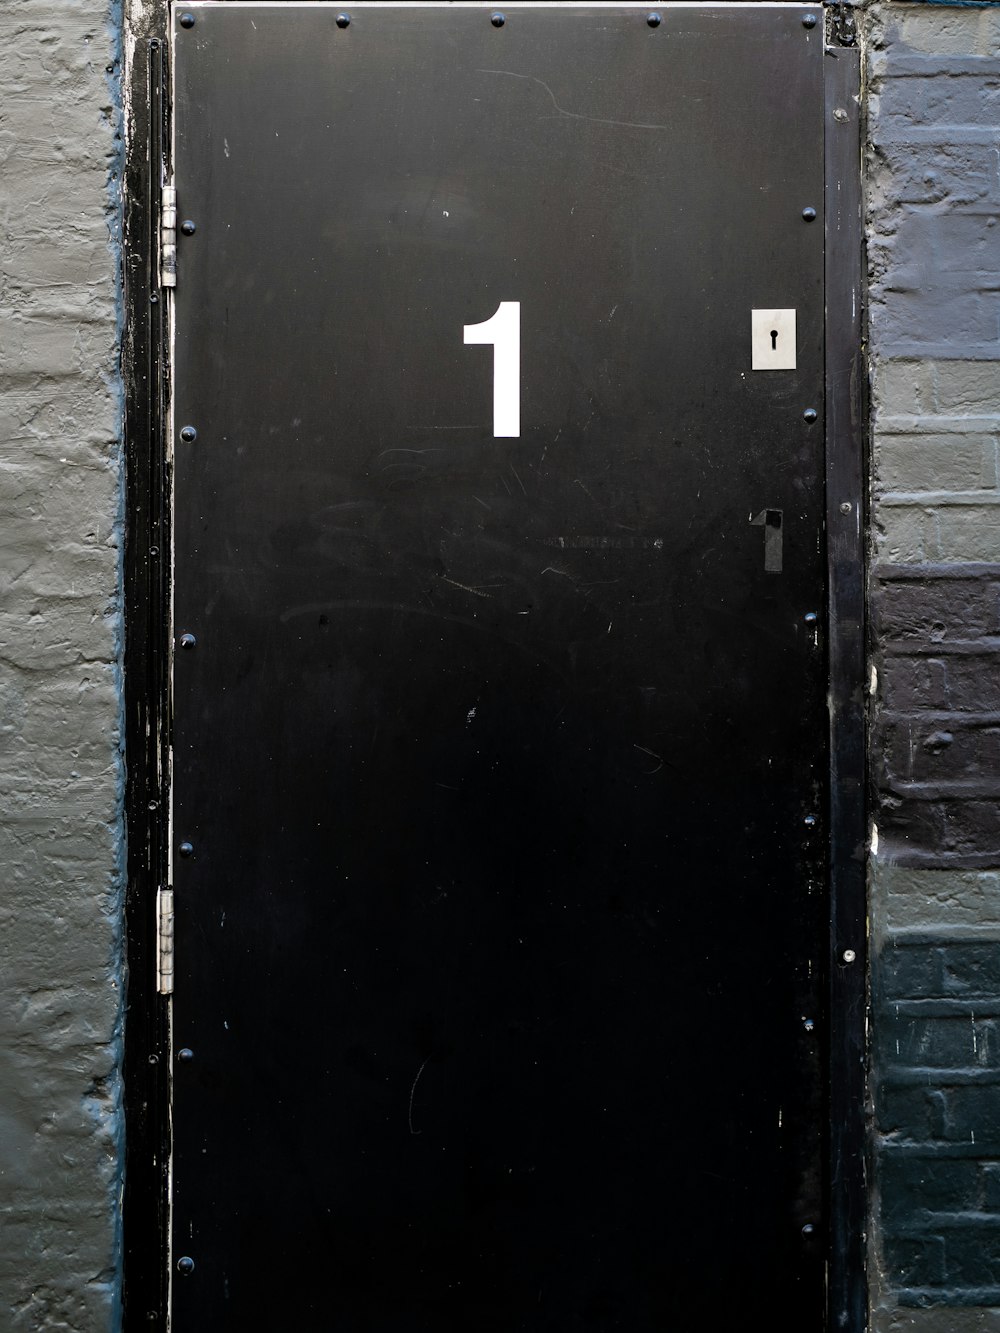 schwarze Holztür mit weißer Nummer 2